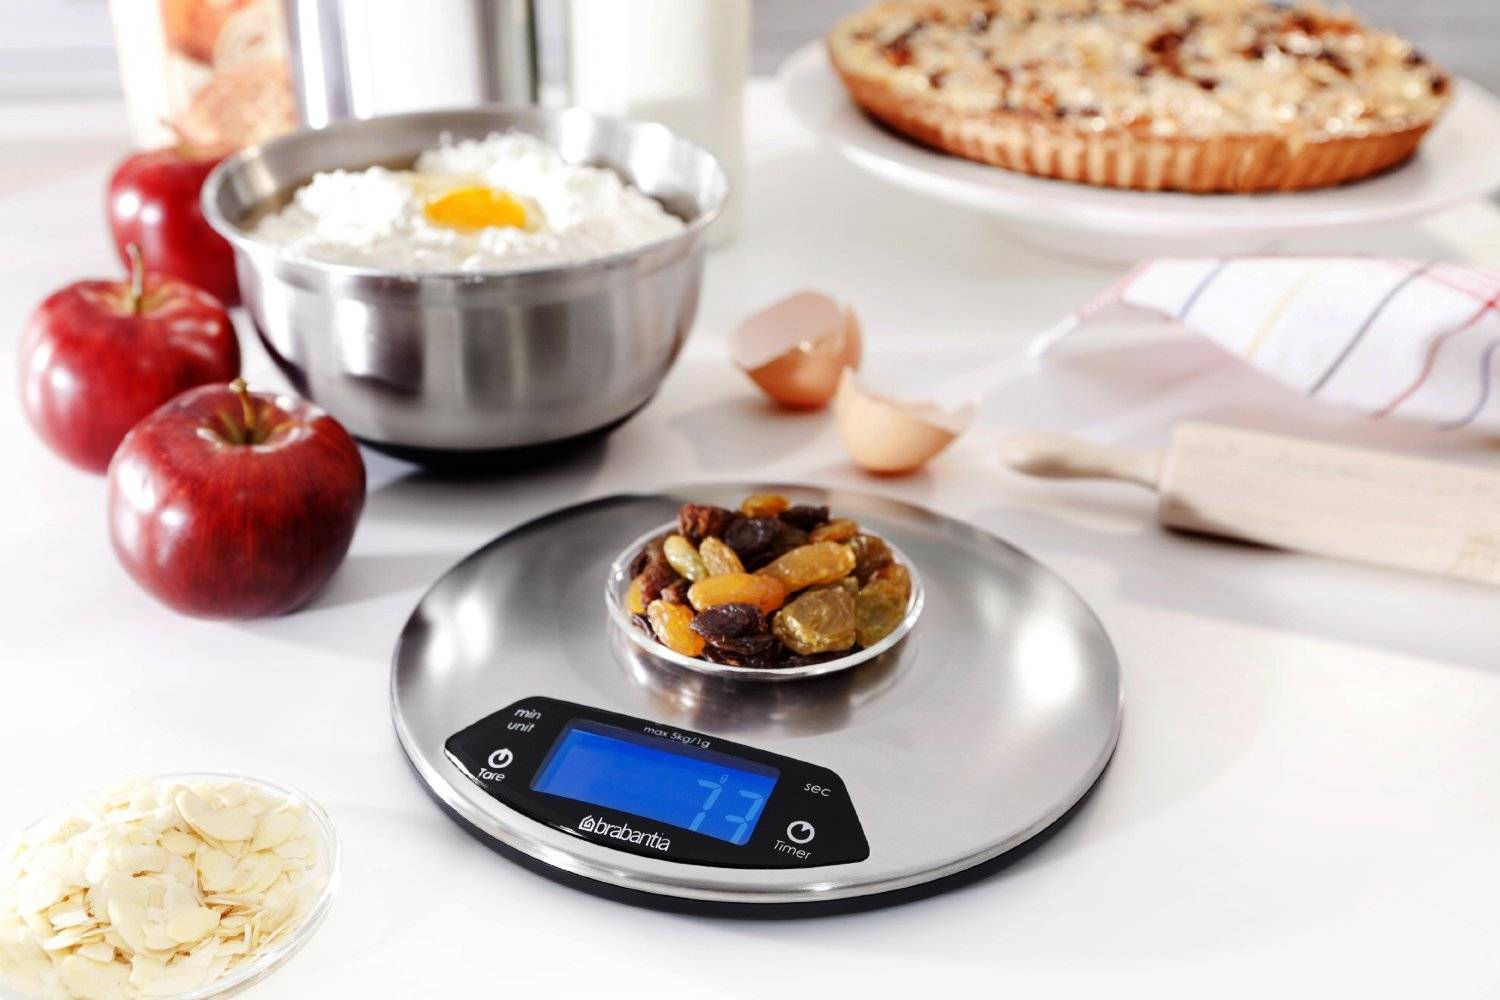 ⚖ какие кухонные электронные весы лучше: отзывы и обзор моделей